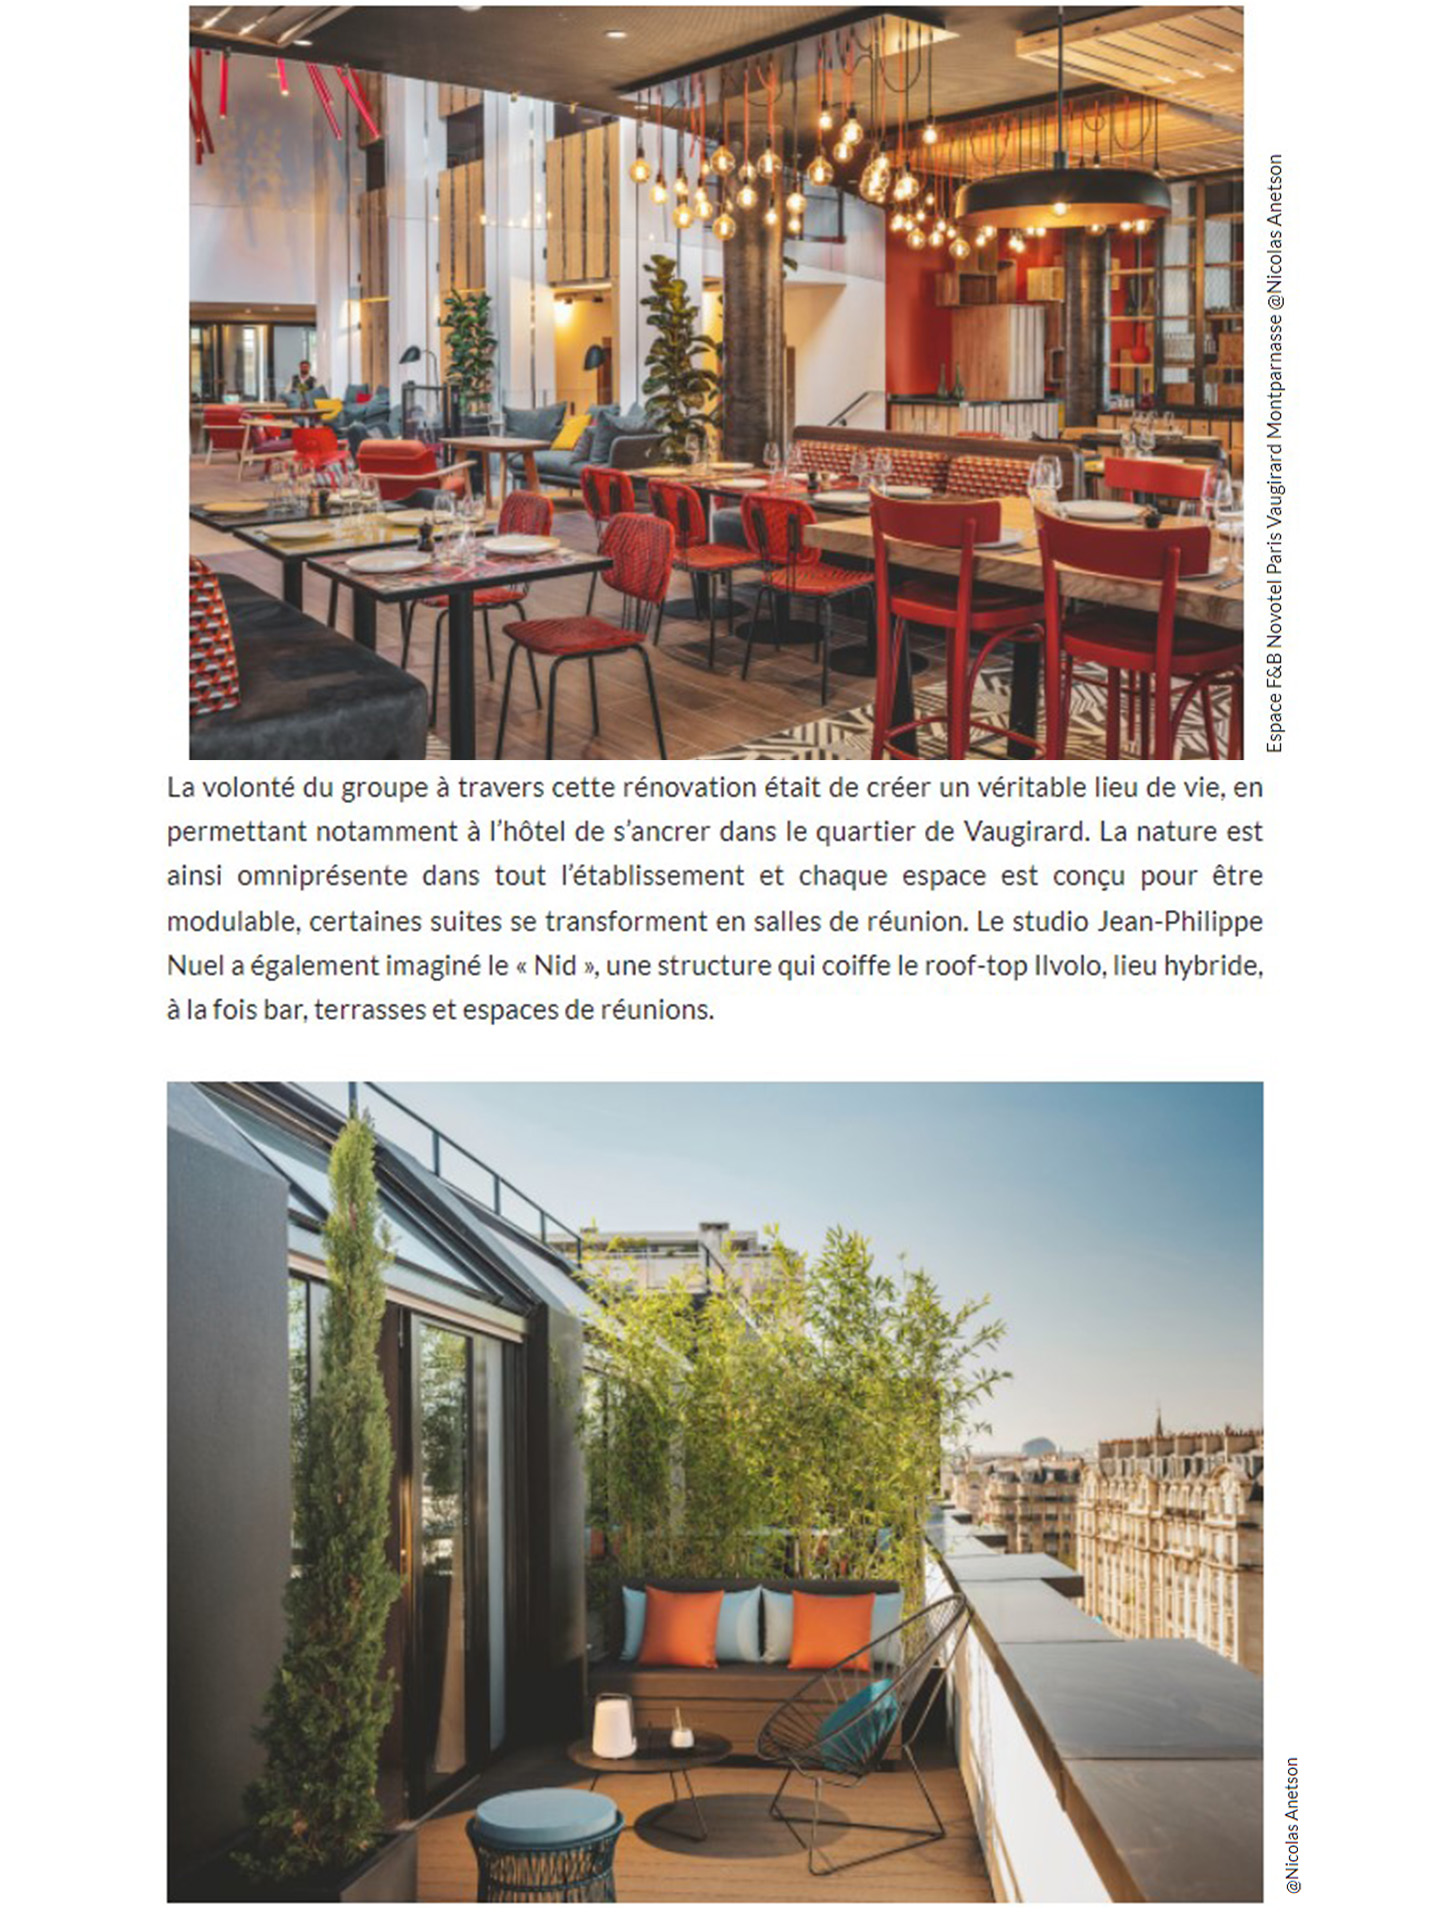 AccorInvest inaugurates Novotel Paris vaugirard renovated by jean-philippe nuel studio, interior design, luxury hotel, lifestyle hotel, interior design, parisian hotel